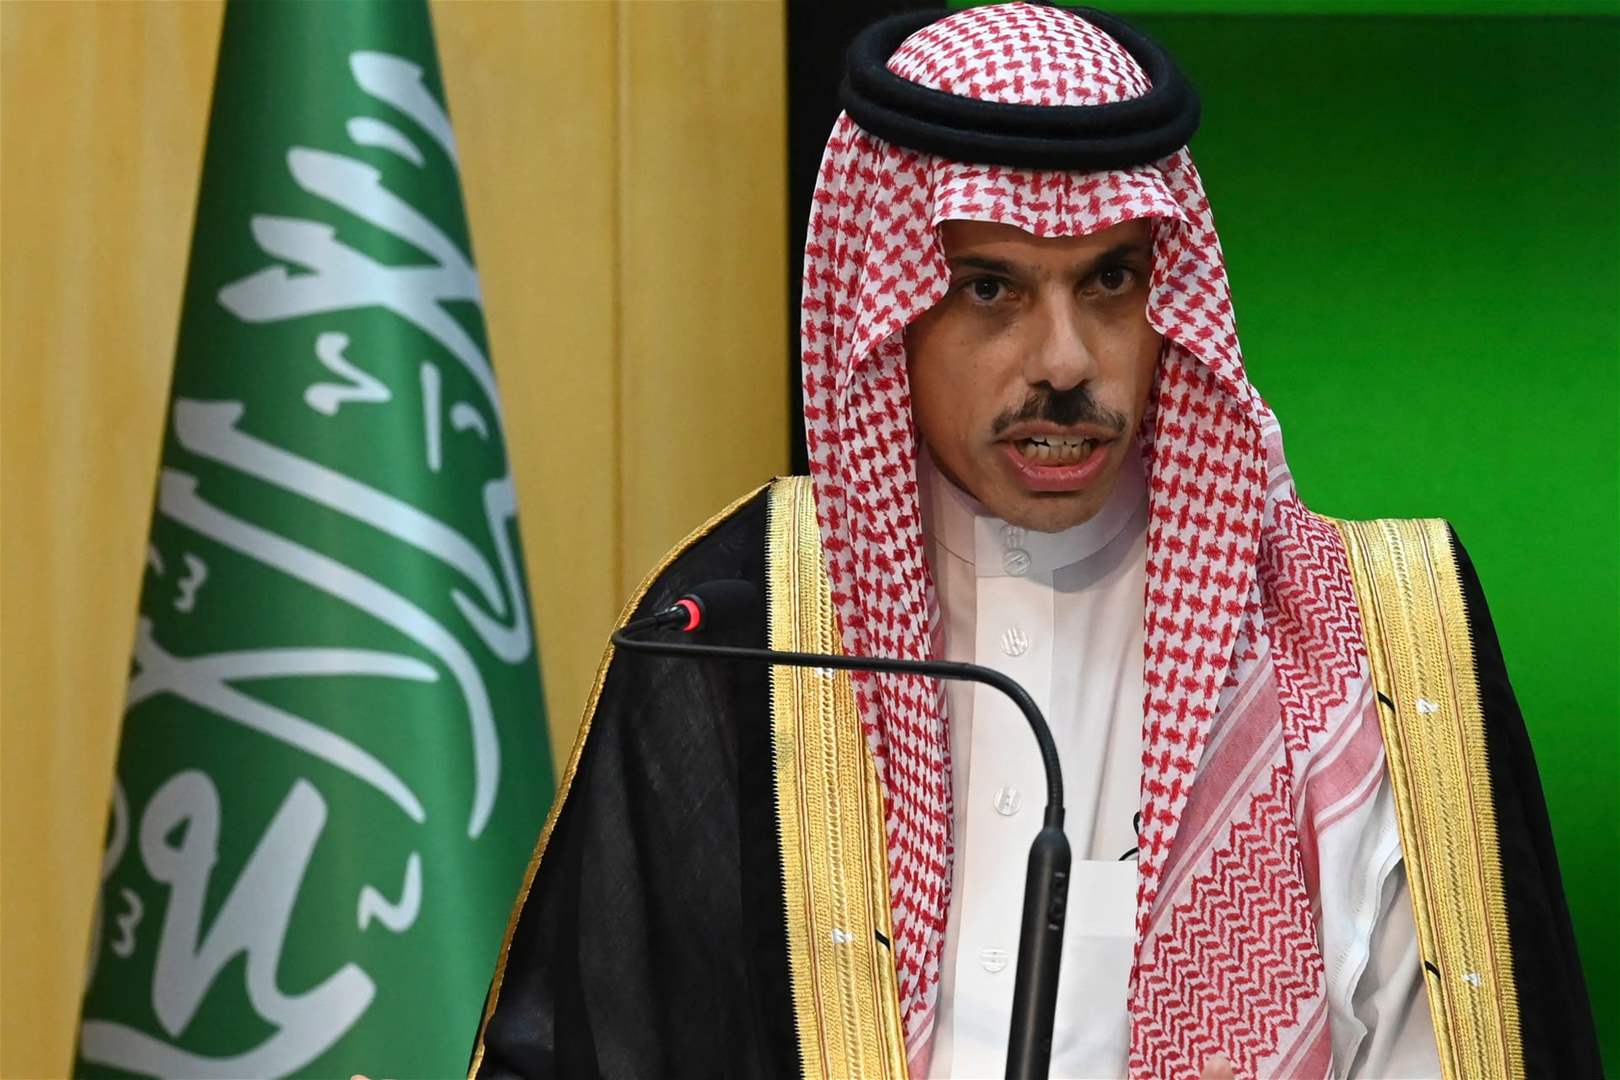 السعودية: إقامة دولة فلسطينية السبيل الوحيد لأمن المنطقة 